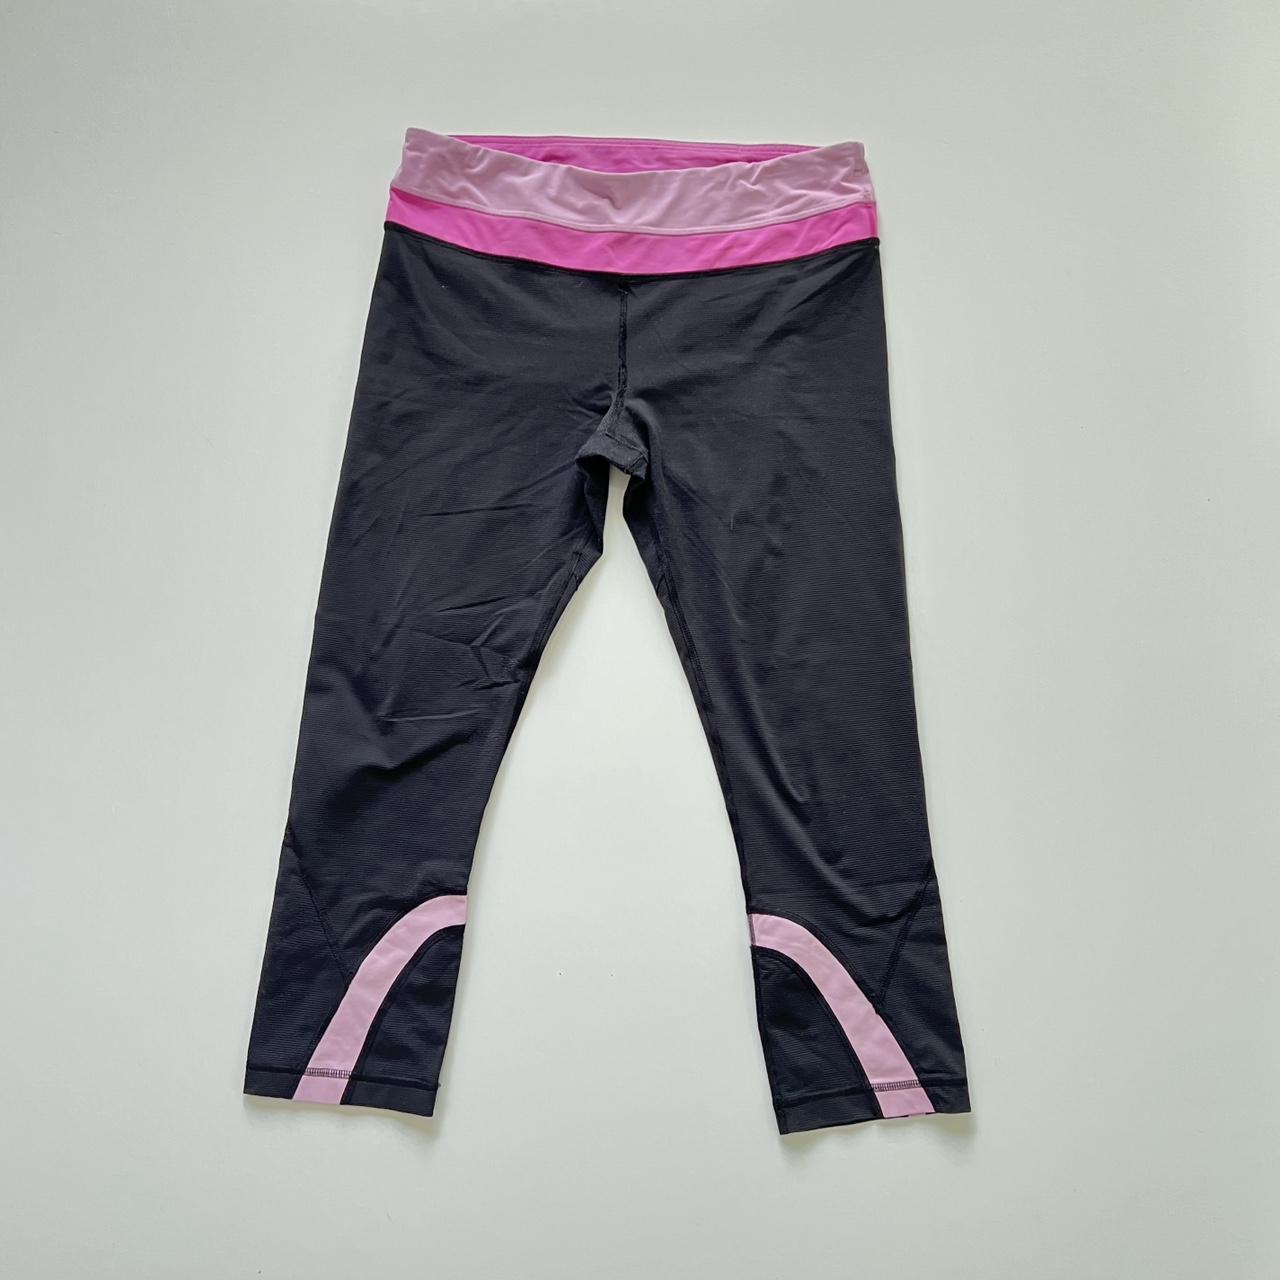 Lululemon run inspire crop leggings pink and black - Depop